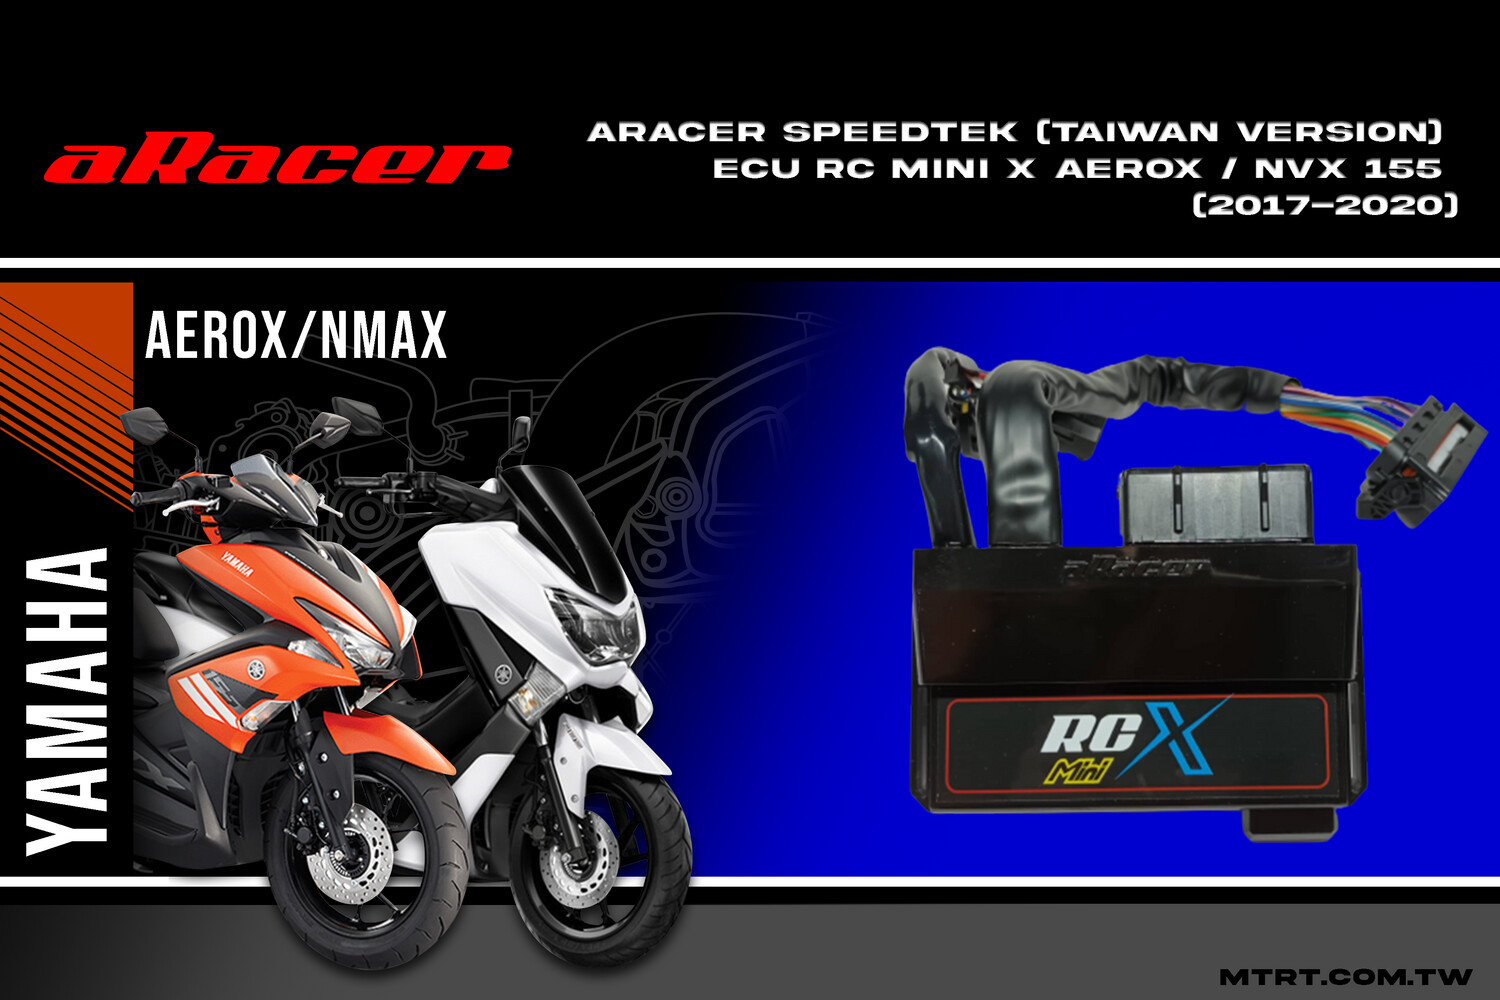 ARACER SpeedTek(Taiwan version) ECU RC Mini X Aerox / NVX 155 (2017-2020)